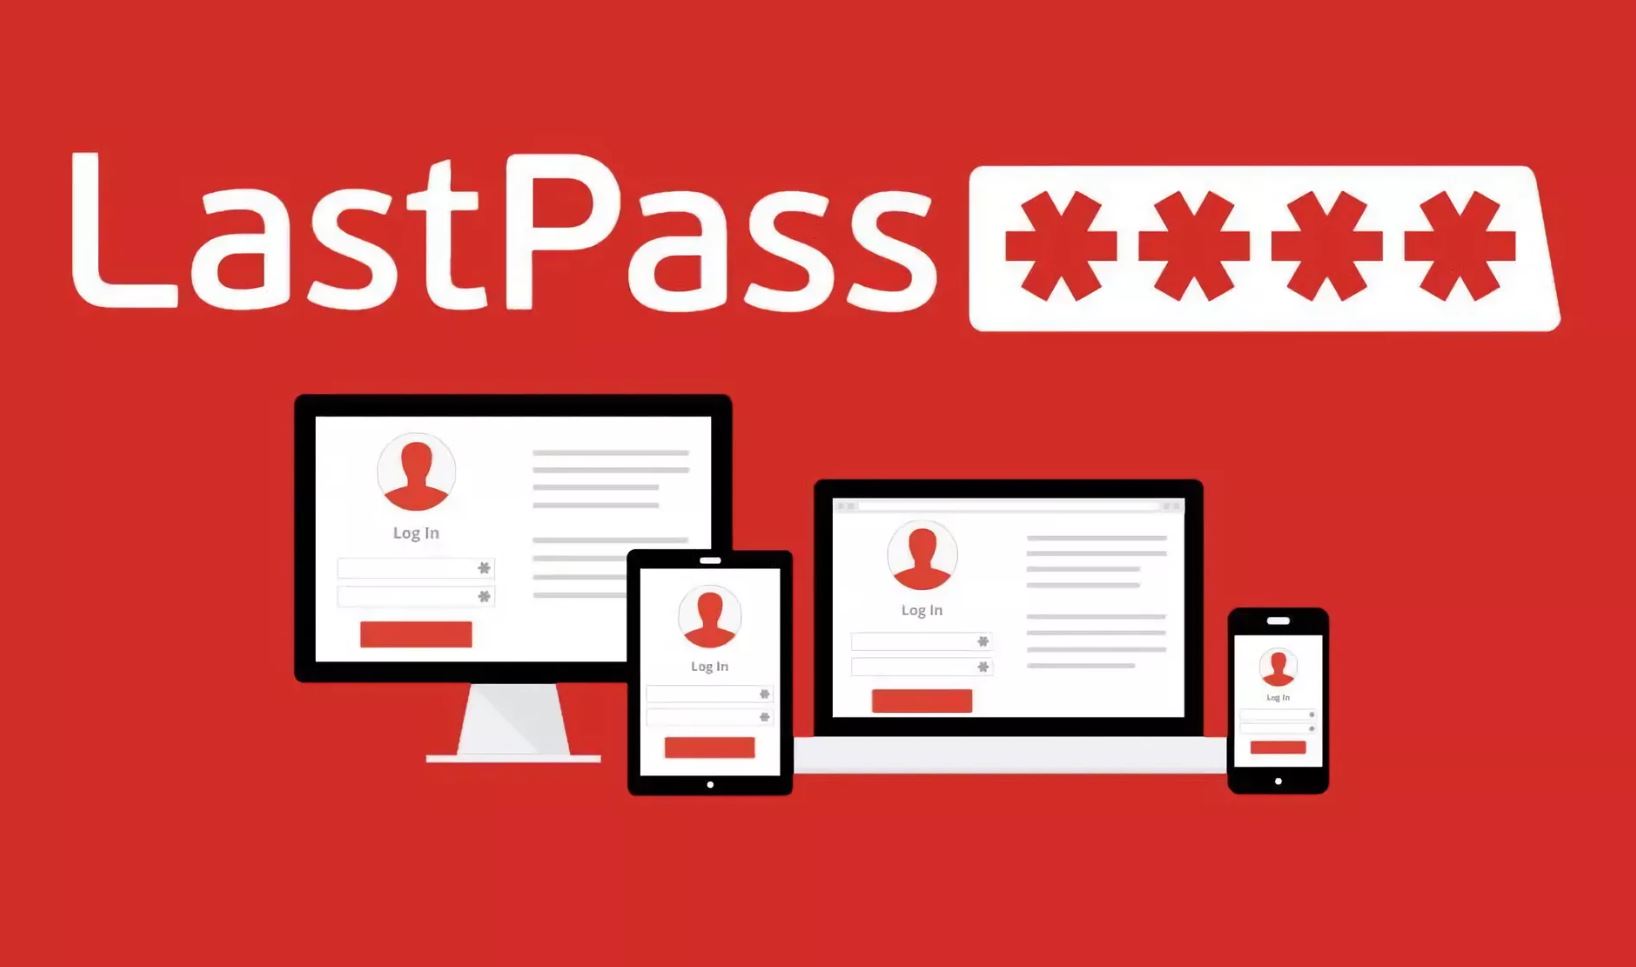 LastPass รายงานข้อมูลรหัสผ่านของผู้ใช้ถูกแฮก แต่เป็นข้อมูลที่ถูกเข้ารหัสไว้